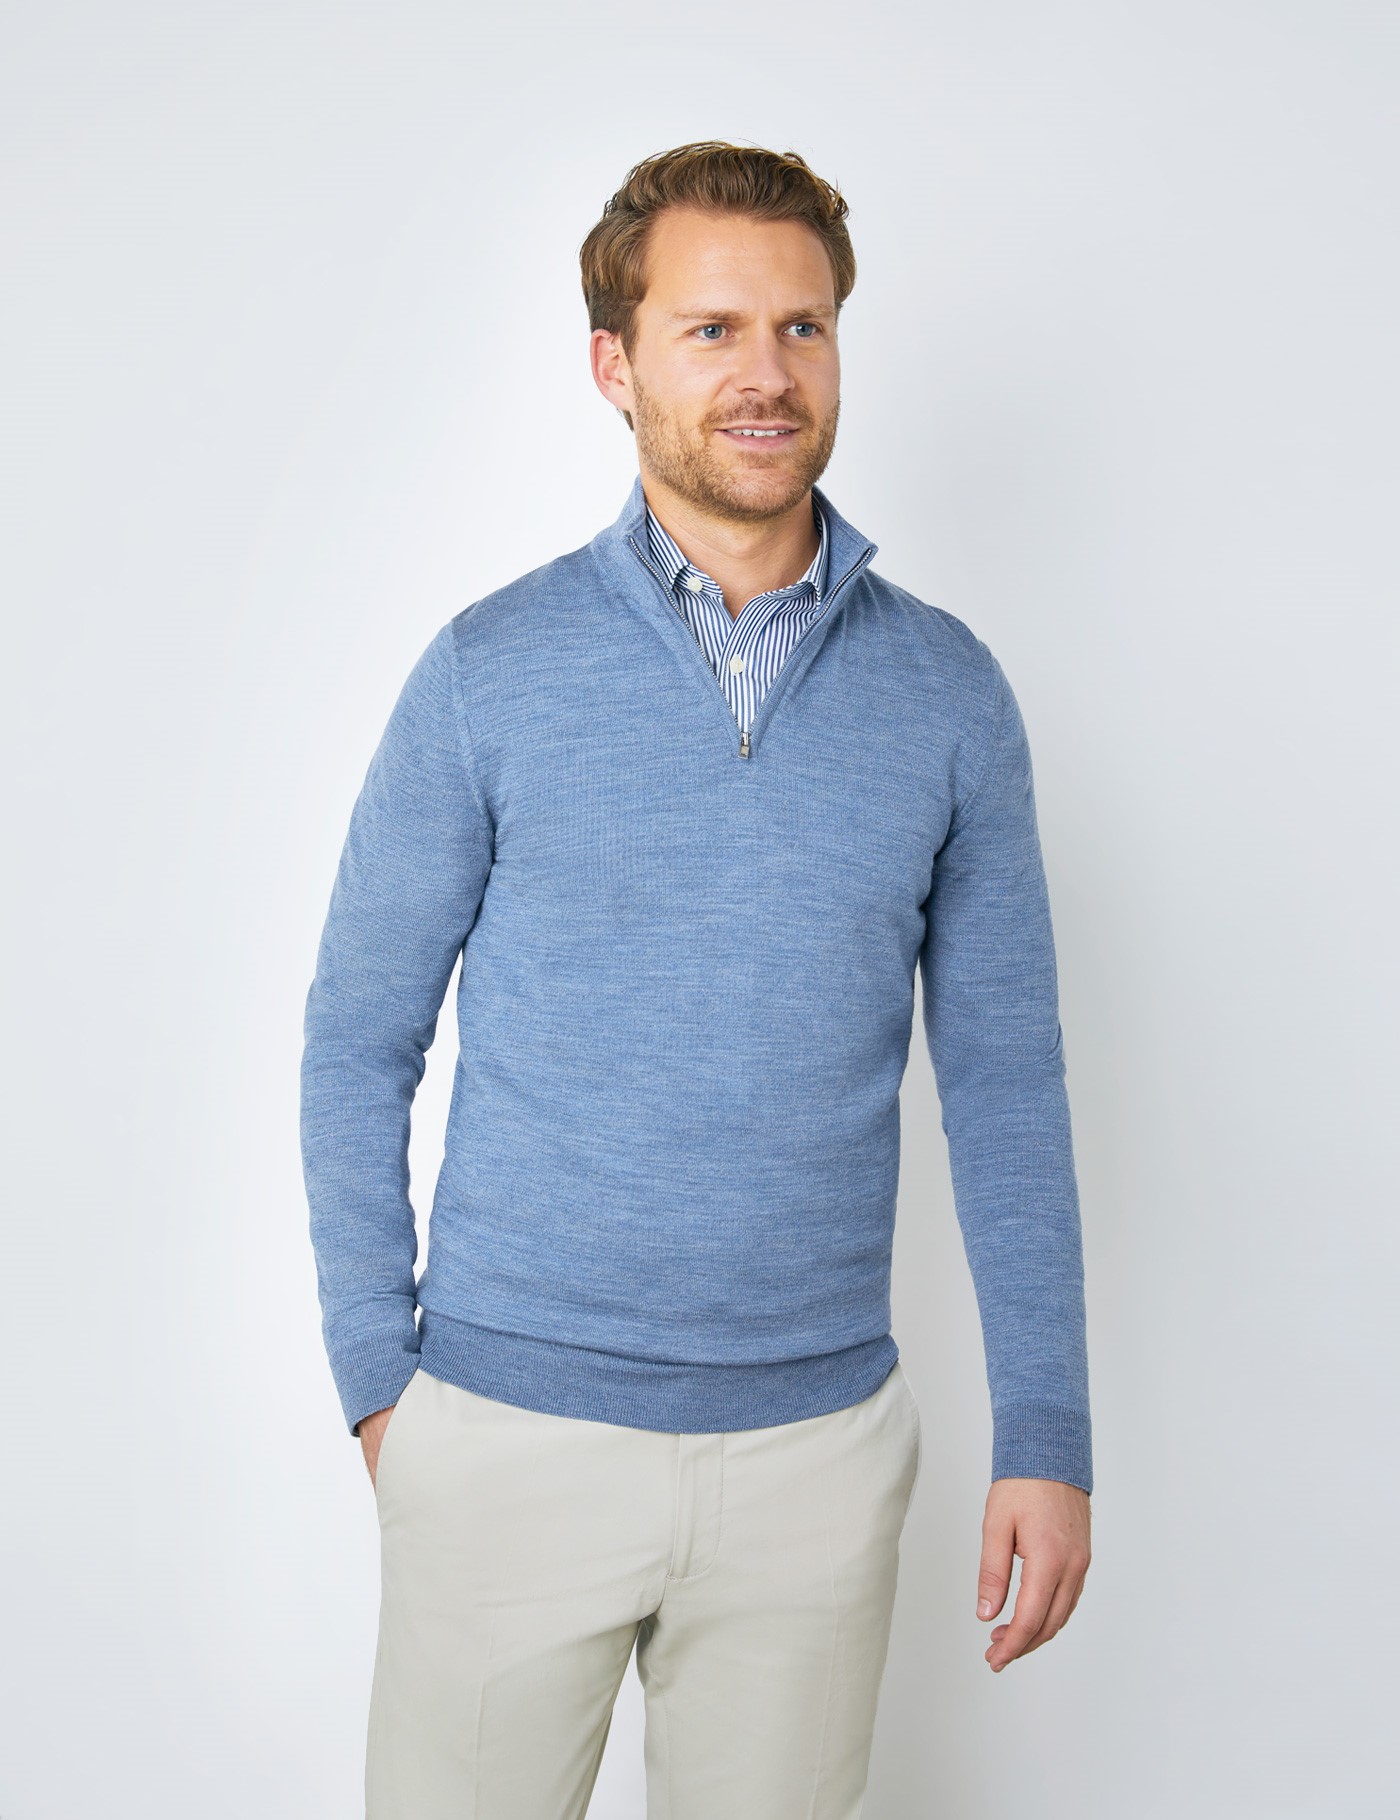 Zip Neck Men’s Fine Merino Wool Zip Neck Sweater in Blue| Hawes & Curtis